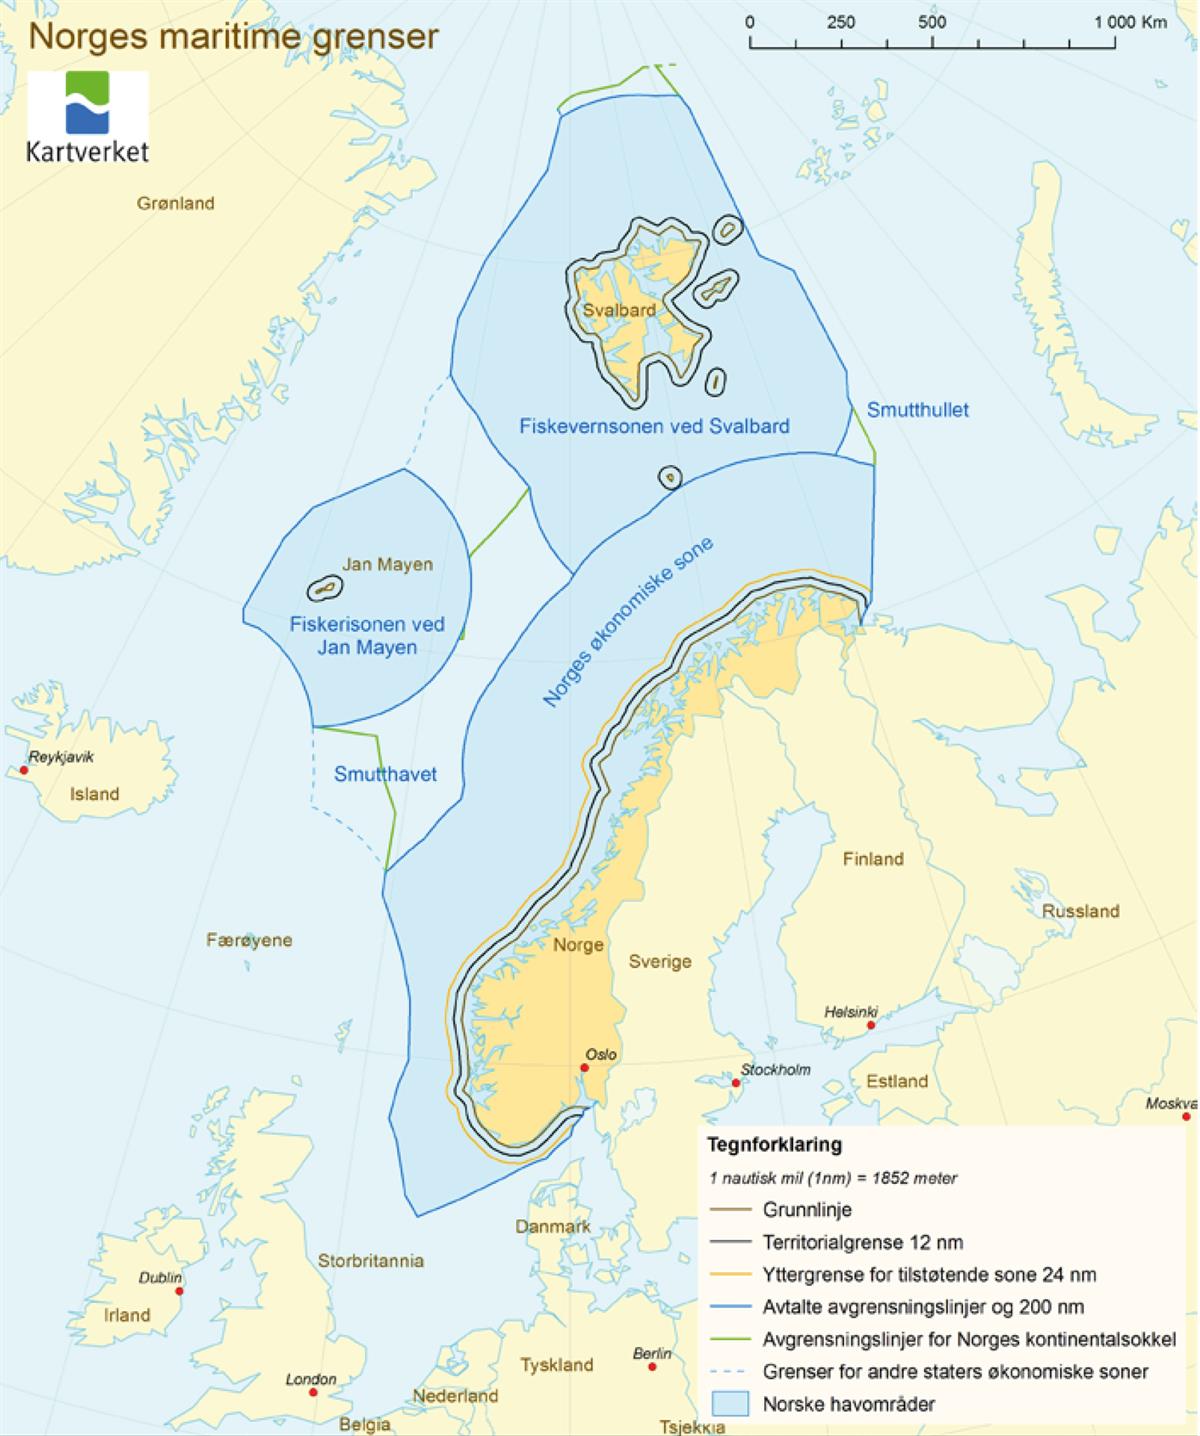 Kart over Norges maritime grenser
Kilde: Statens kartverk